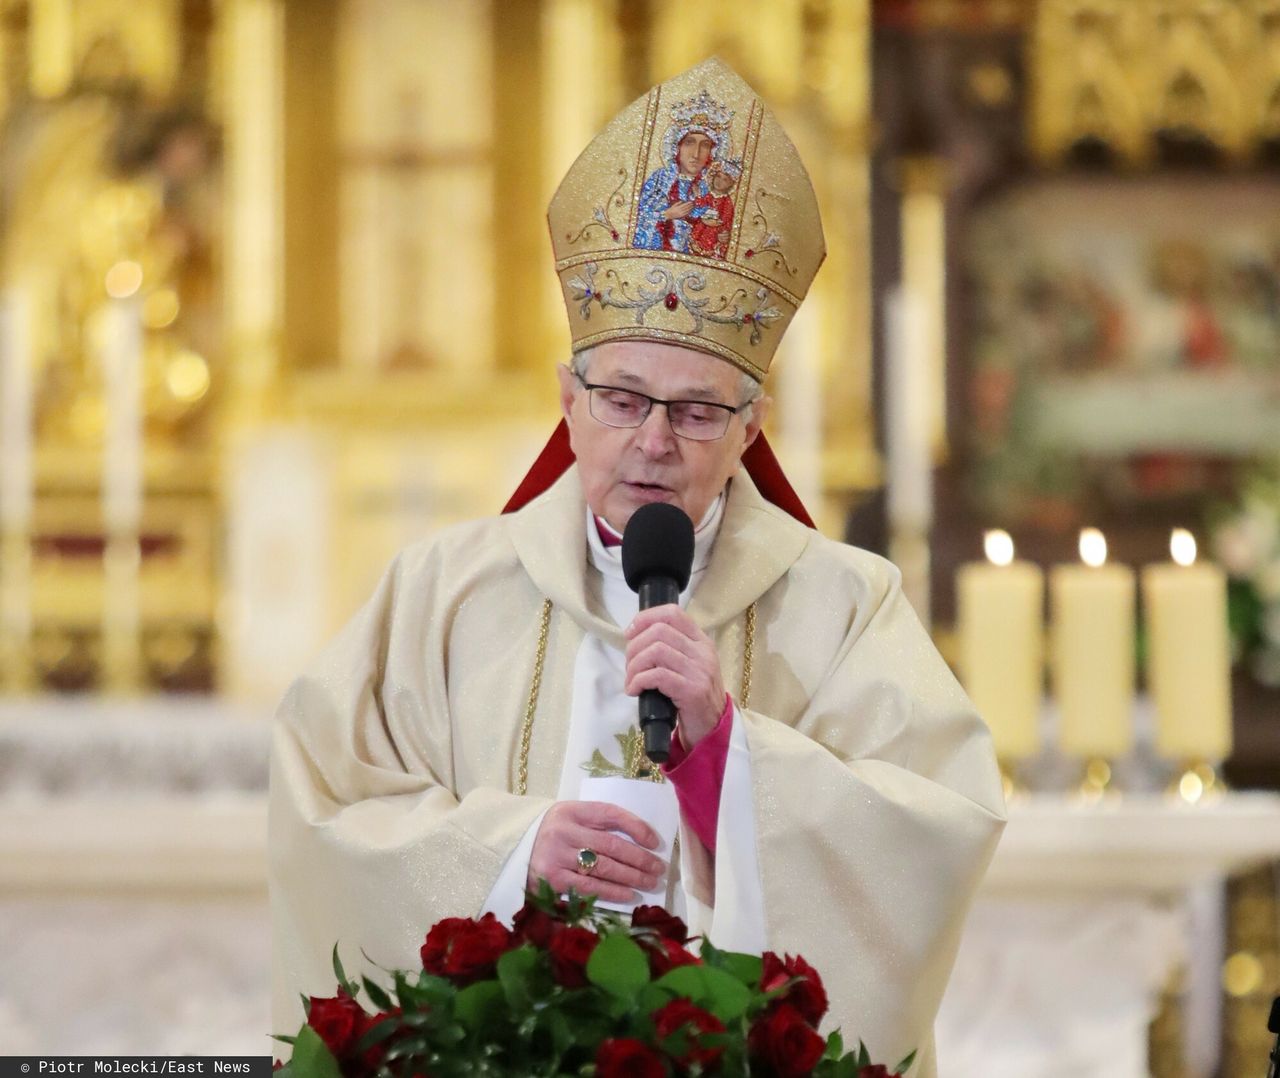 Wzruszające słowa biskupa Antoniego Długosza na pogrzebie Krzysztofa Krawczyka. "Jest gdzieś niebo jak len"